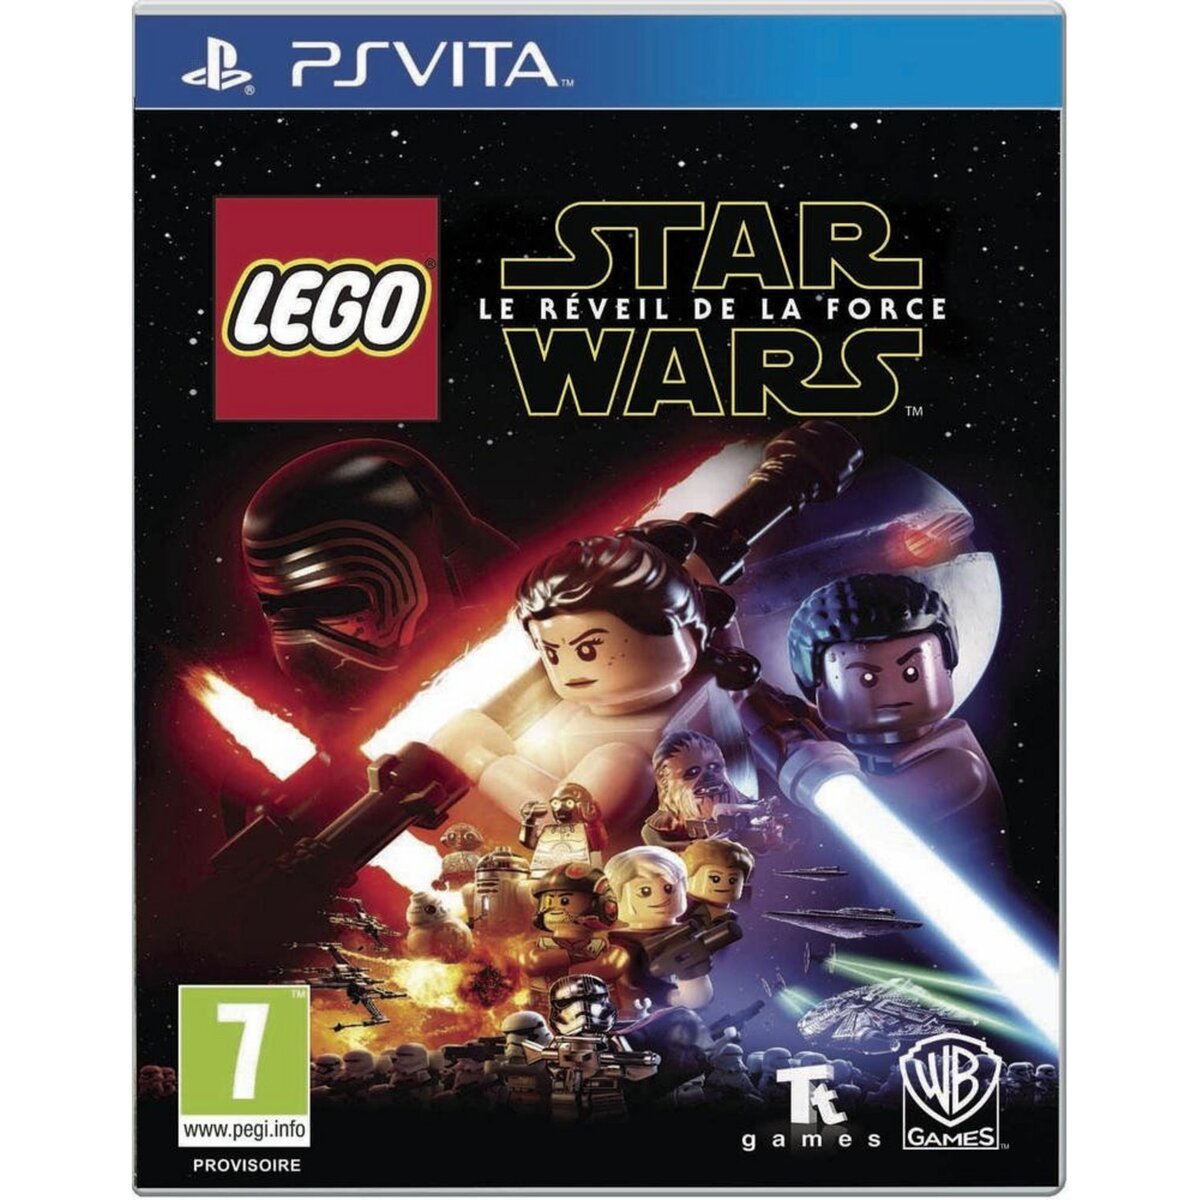 Lego Star Wars - Le Reveil de la force PS Vita